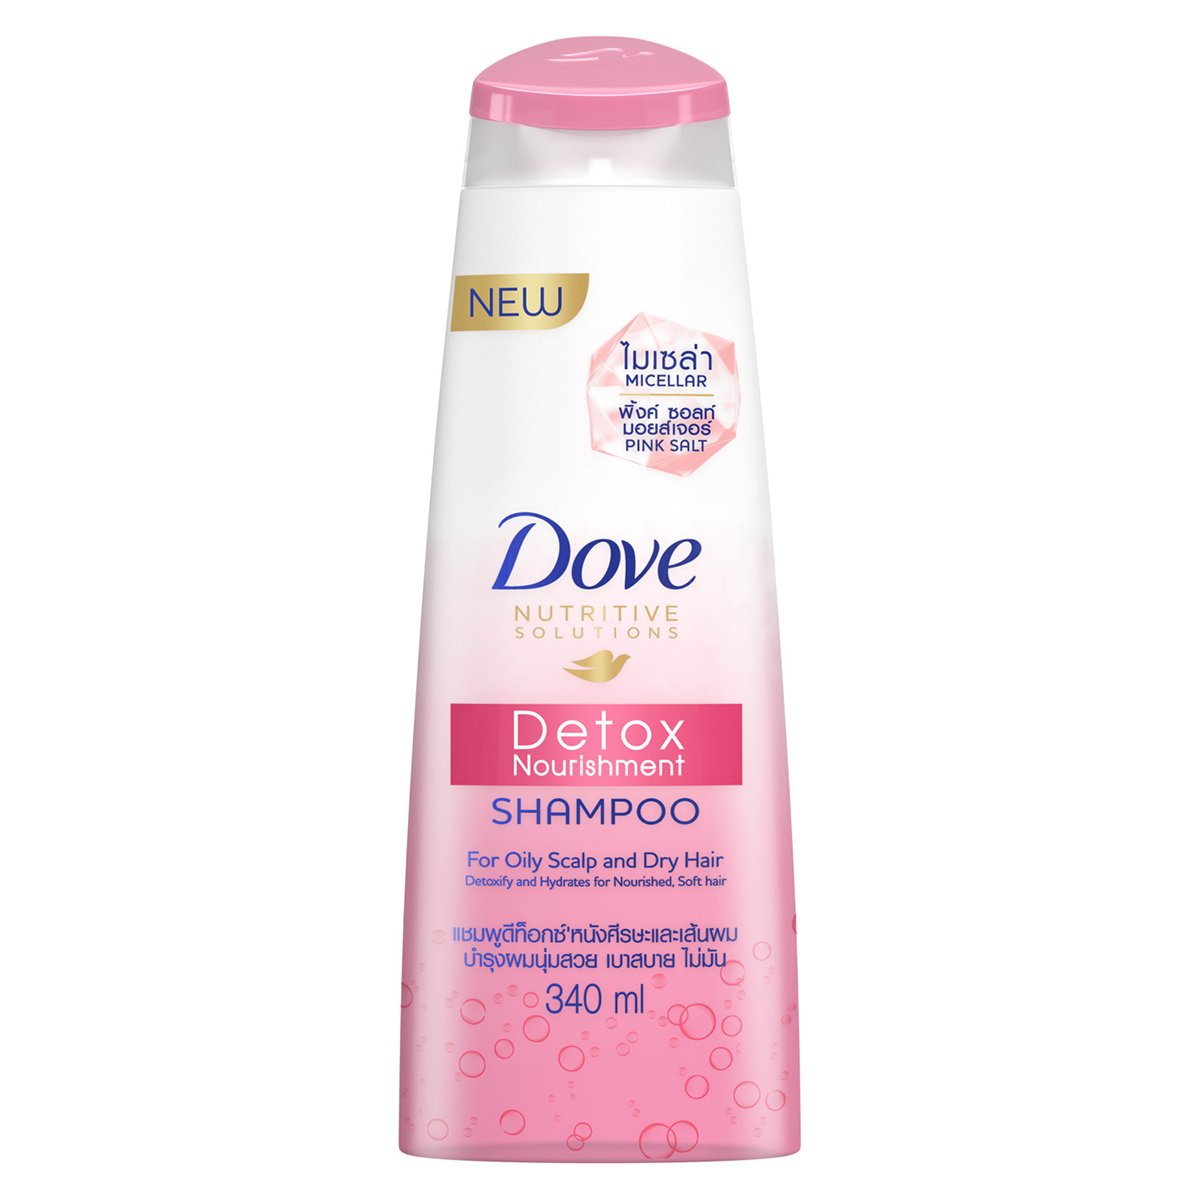 Dove Shampoo Detox Nourishment 340ml